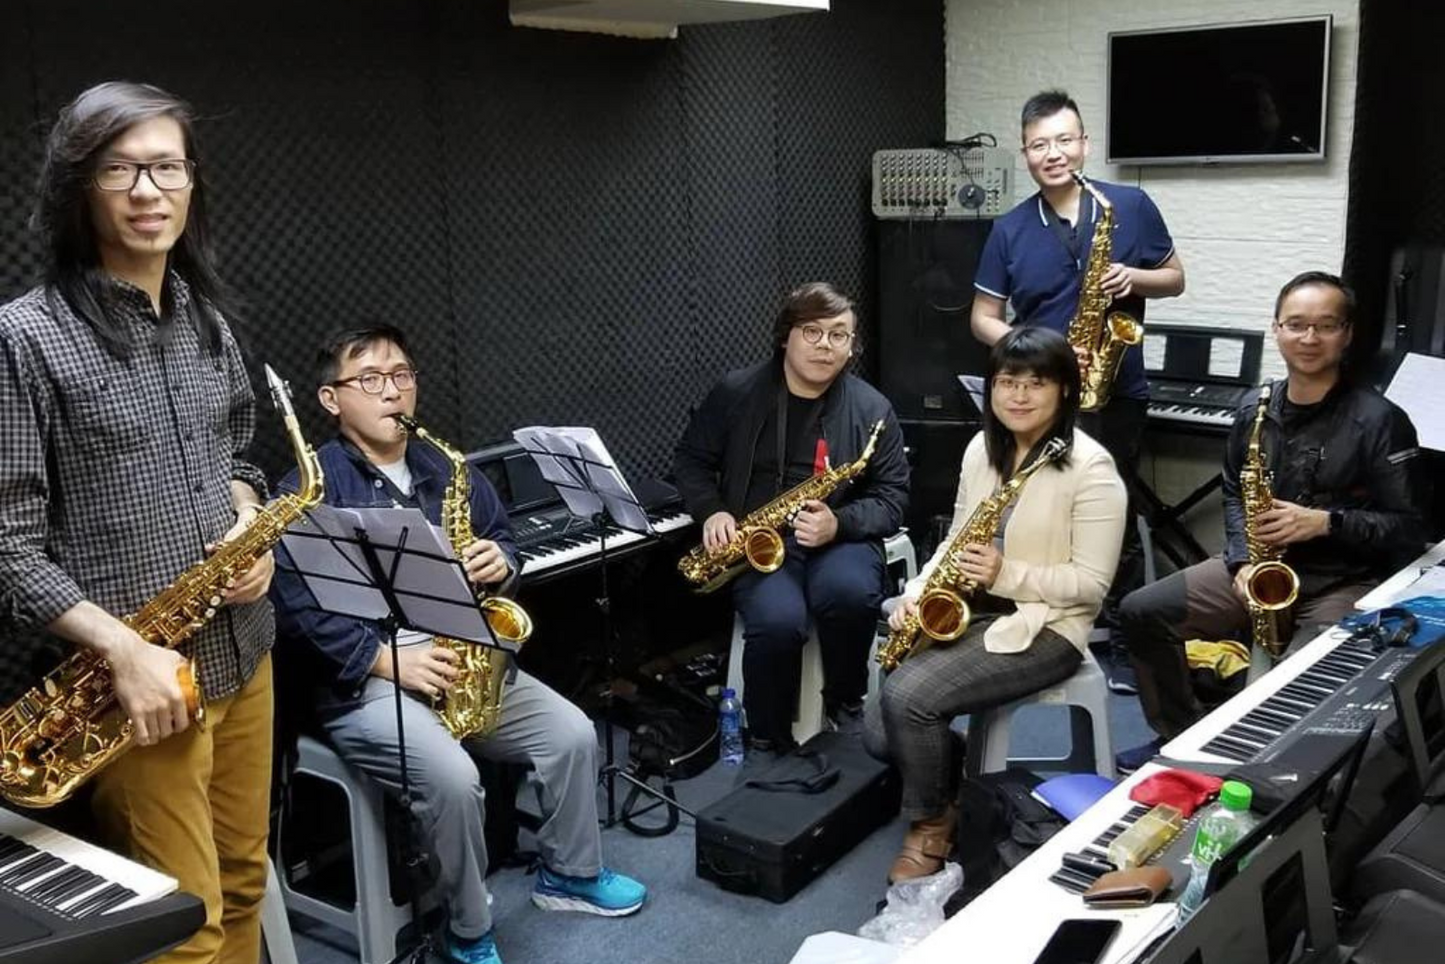 【色士風課程】Saxophone 學色士風教學班  (旺角總店)